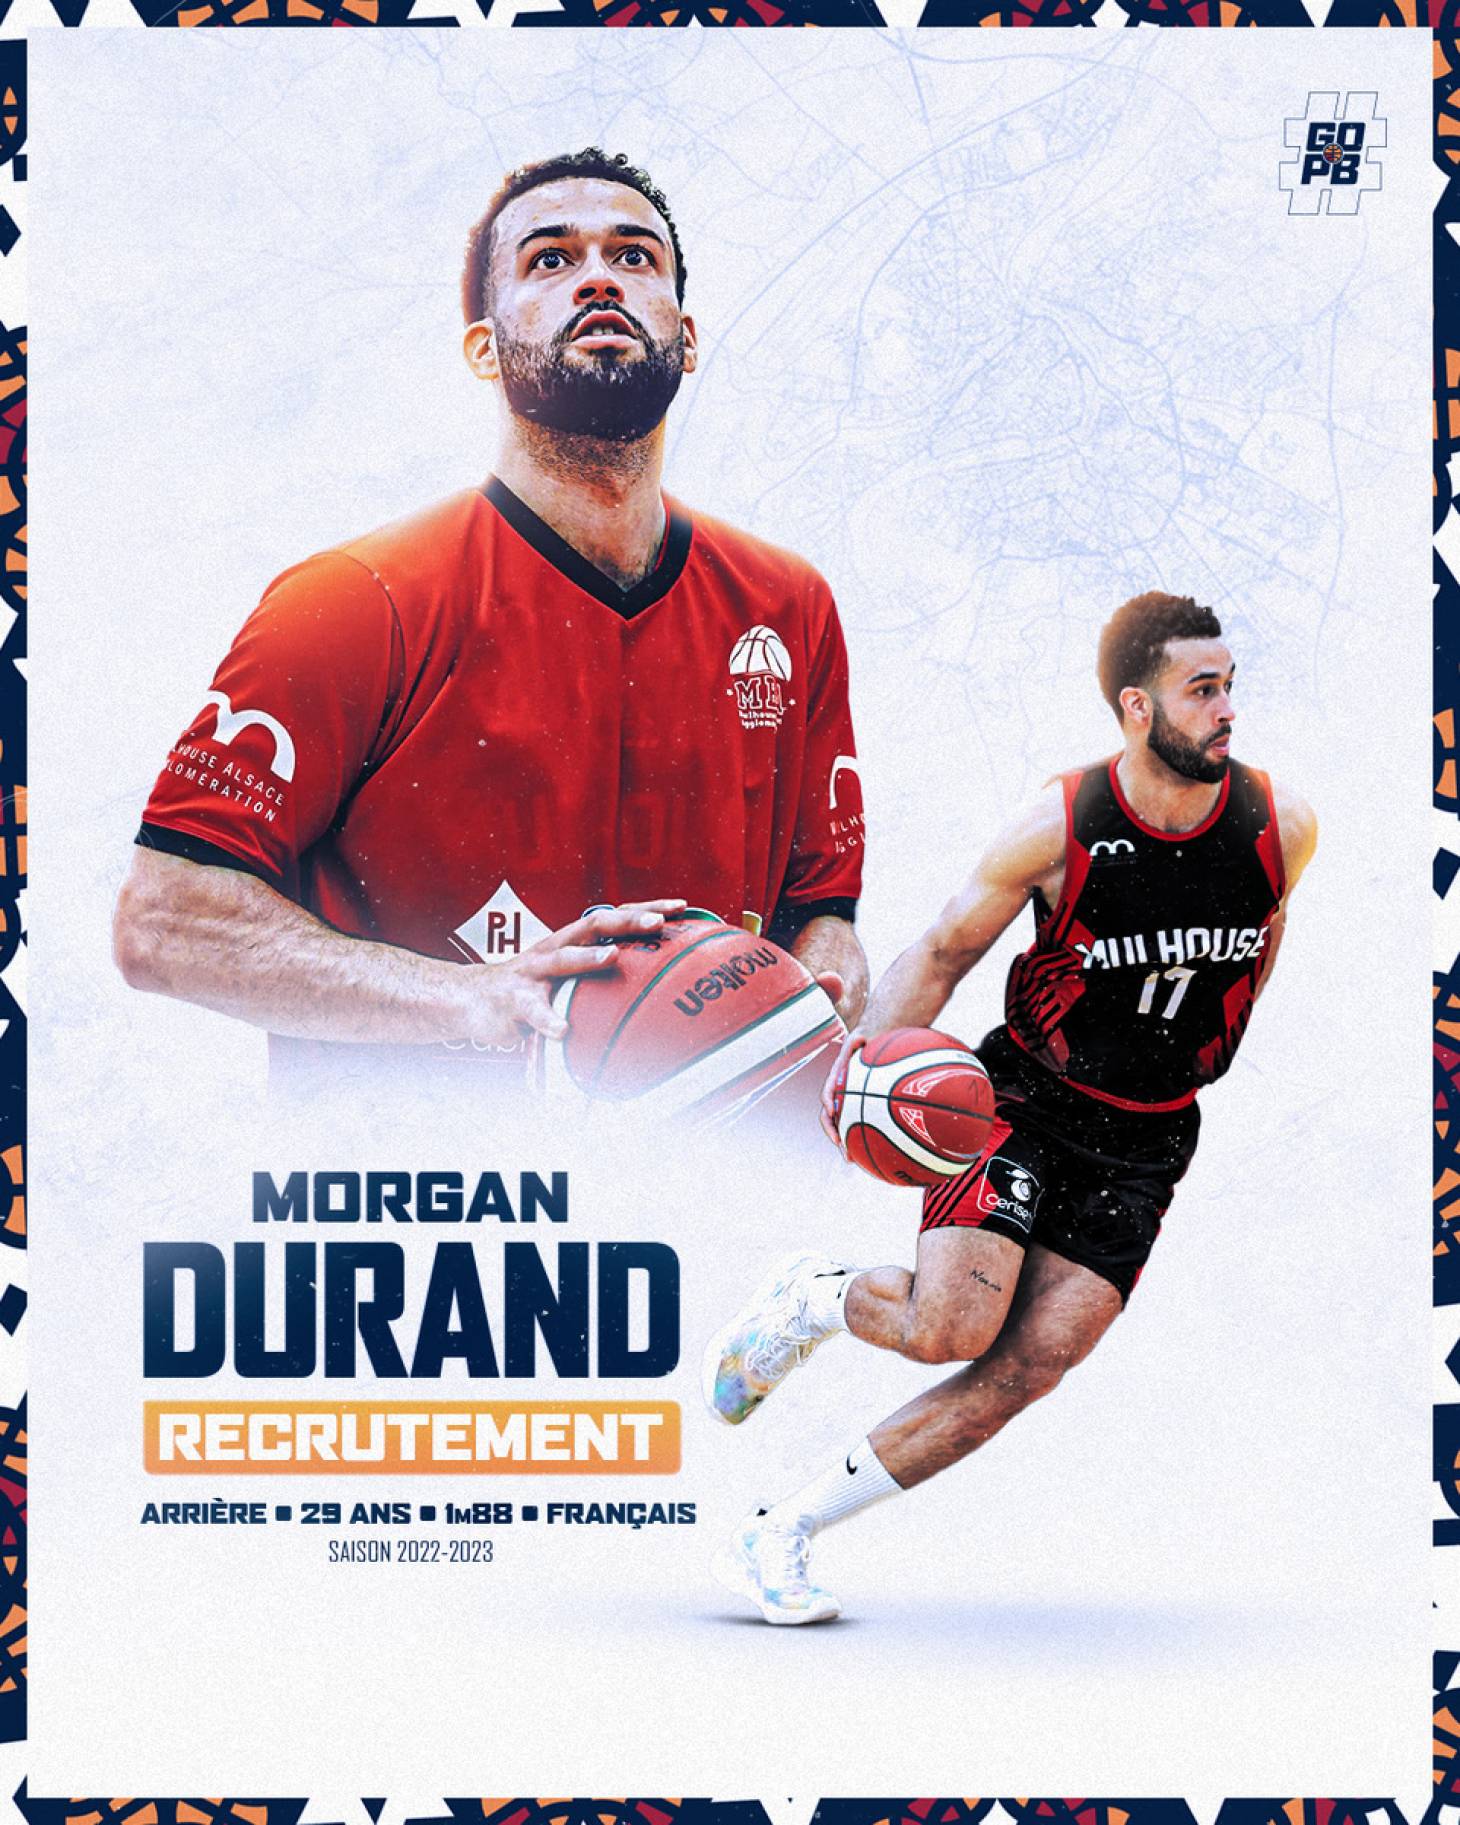 Basket - Morgan Durand s'engage au PB86